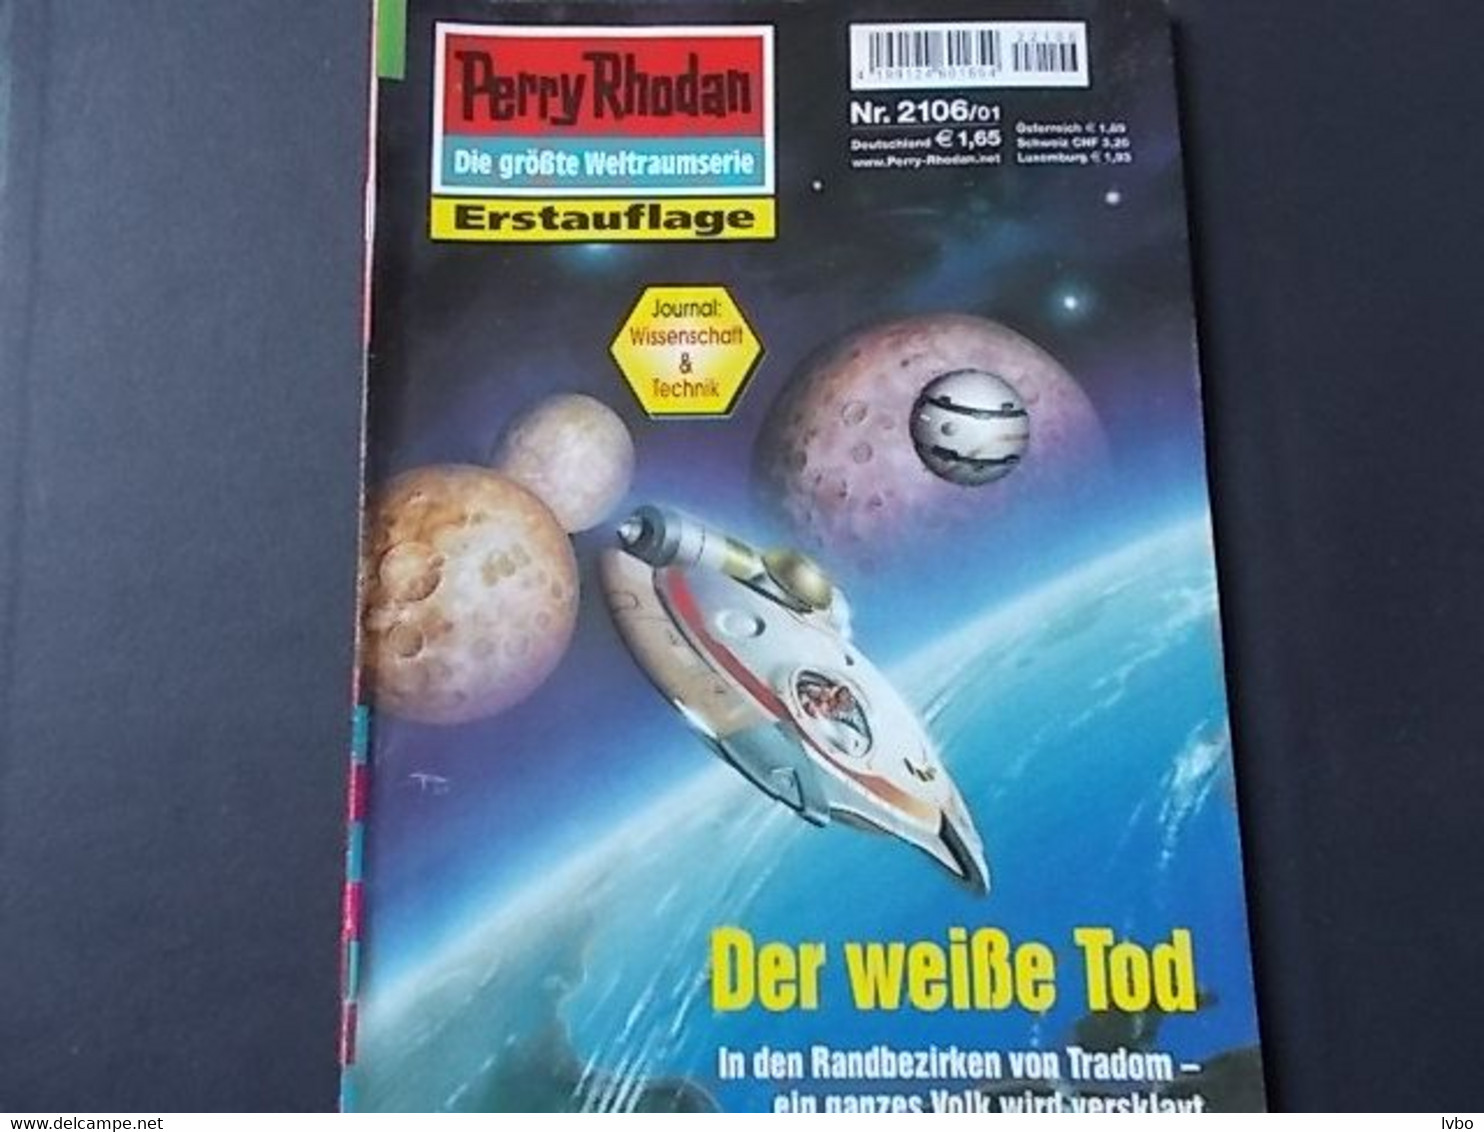 Perry Rhodan Nr 2106 Erstauflage Der Weiße Tod - Sciencefiction